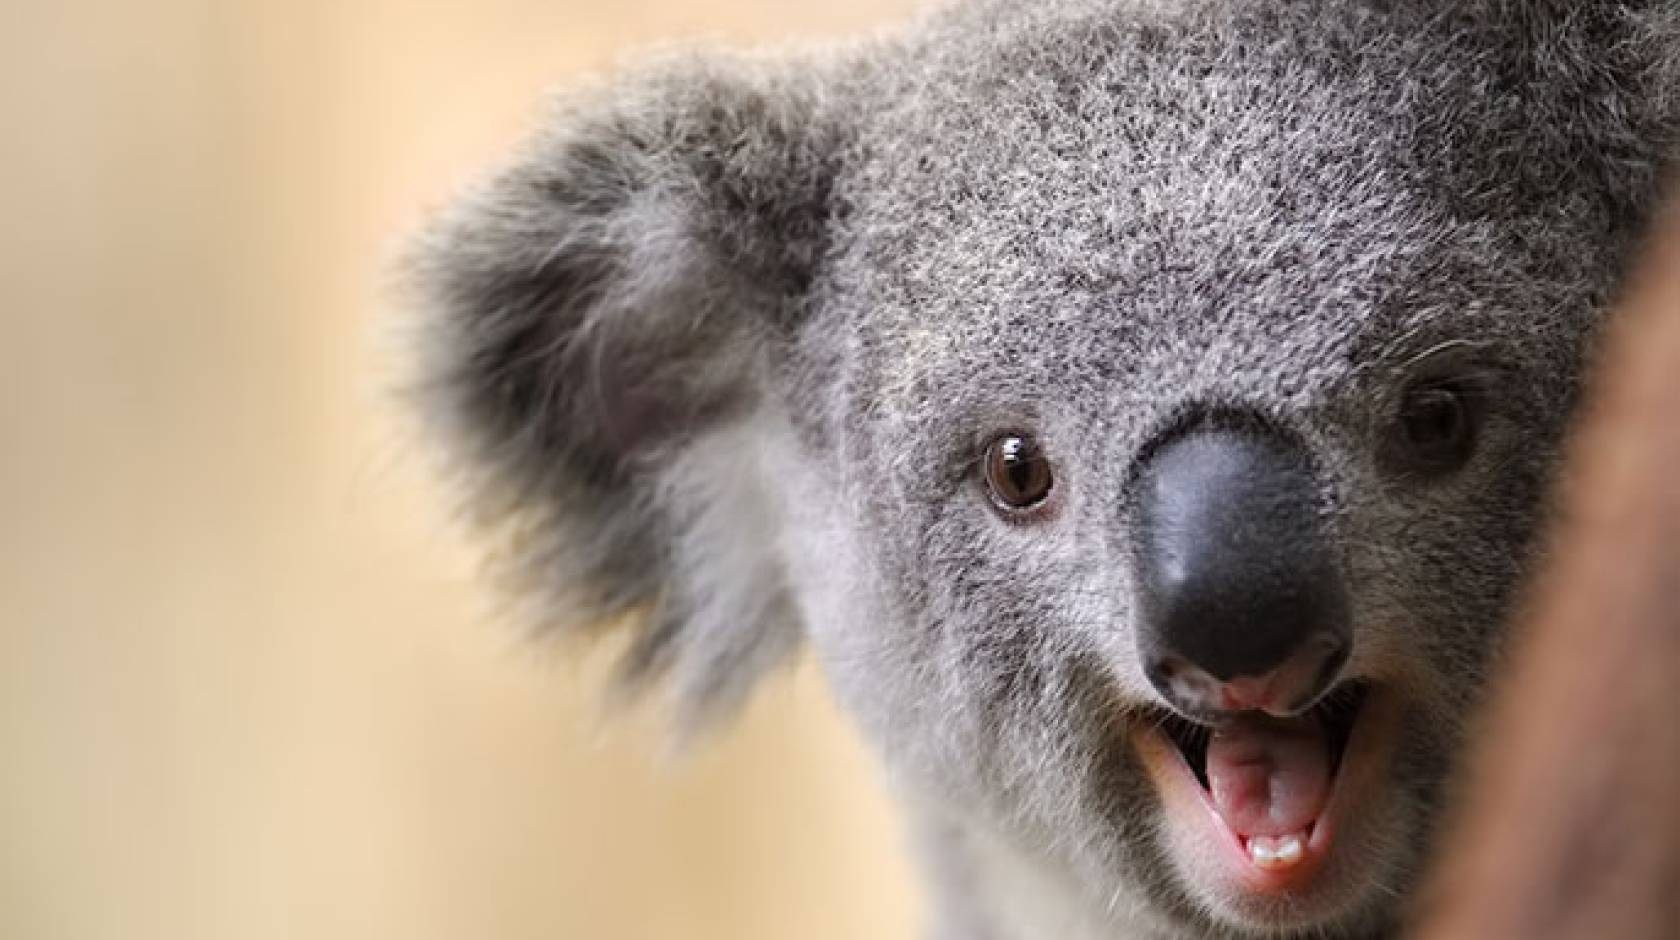 Animals laugh, too | University of California